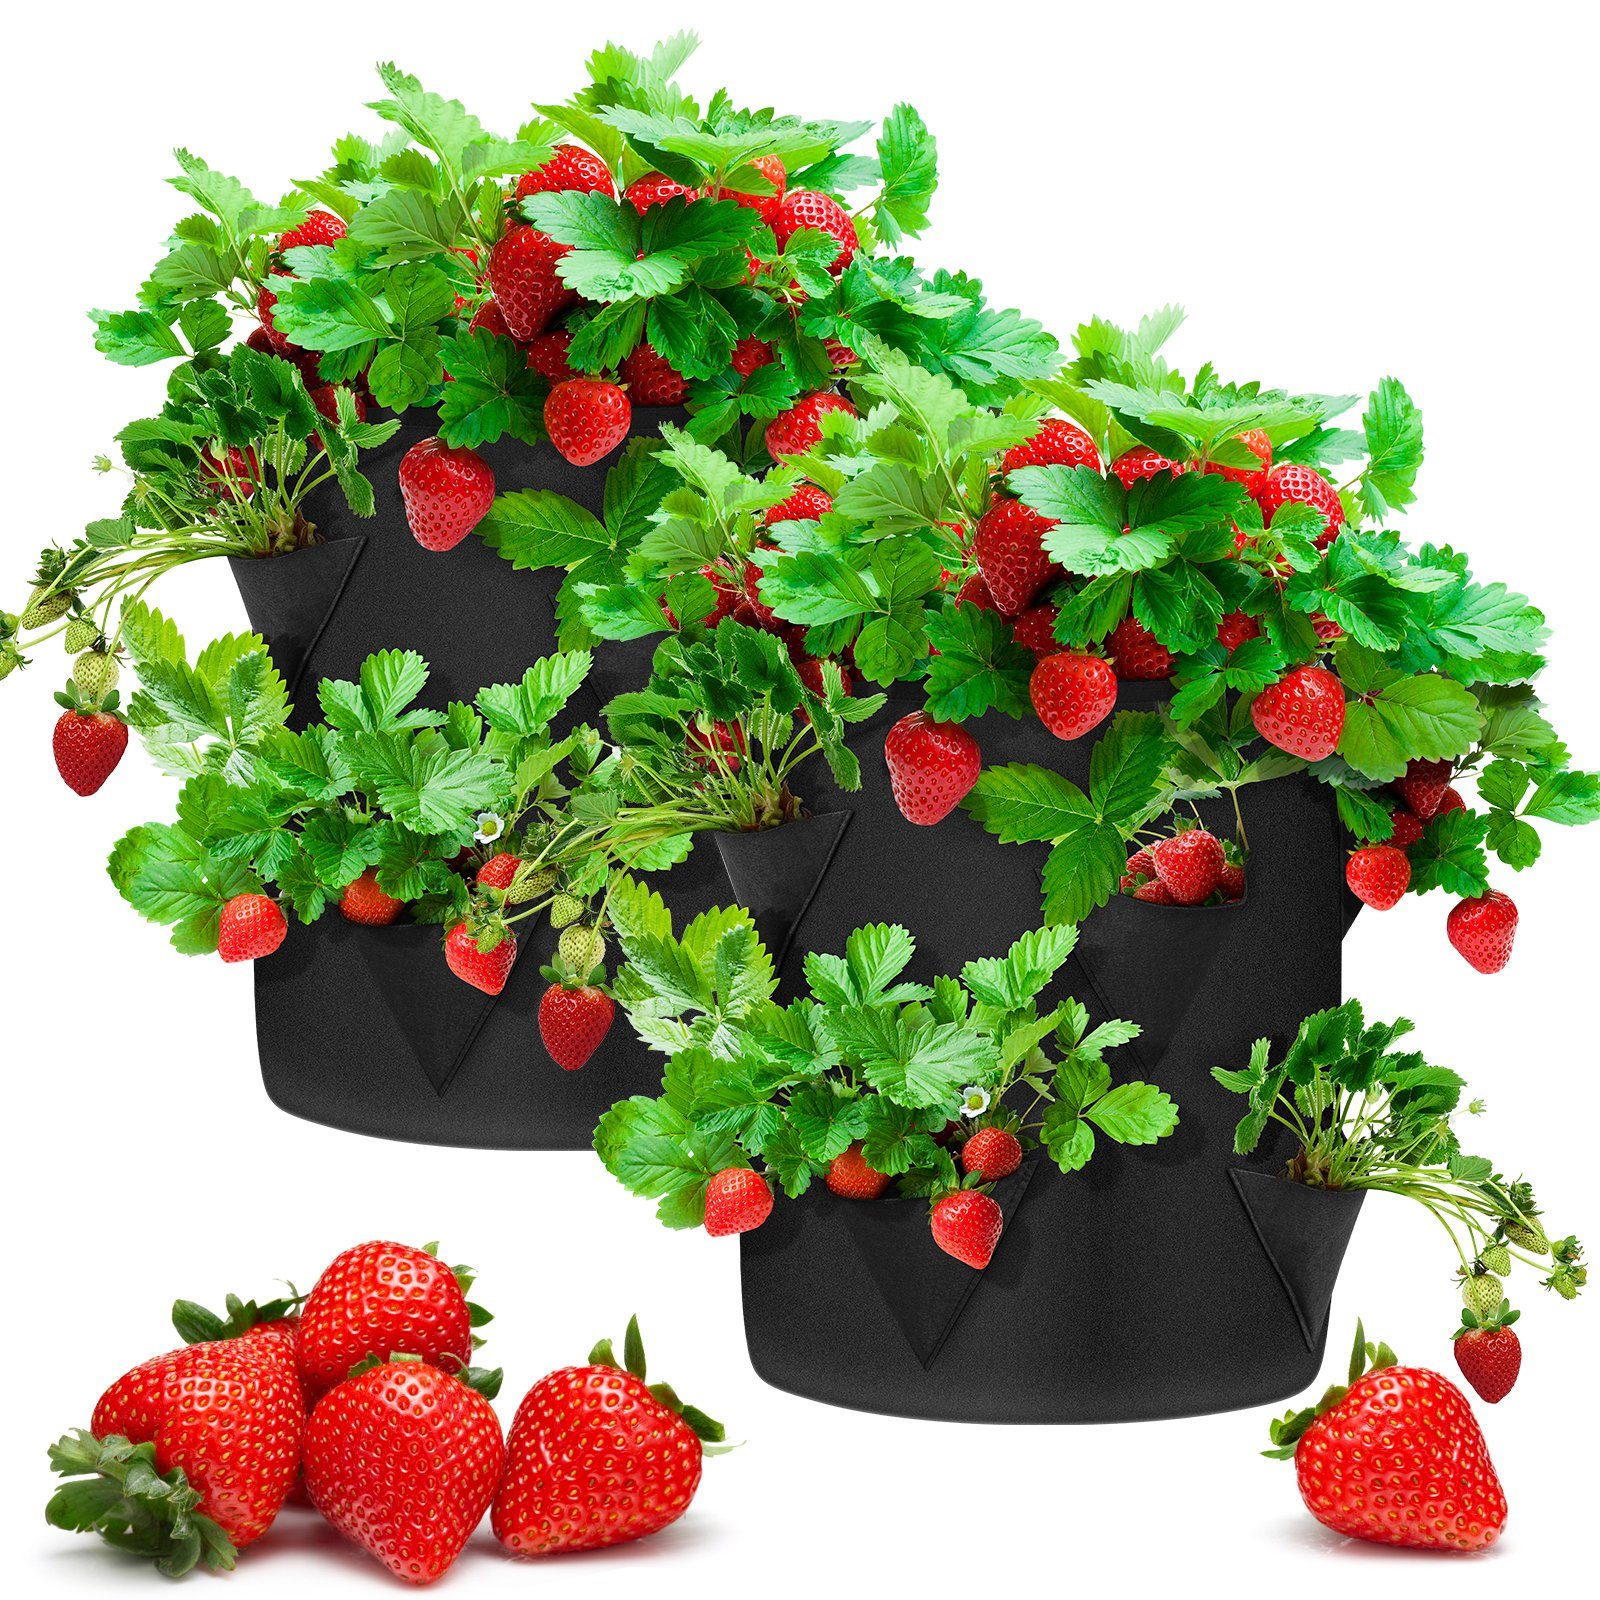 Femor Pflanzkübel (2 Stück), Erdbeere Pflanzsack, 2X30L, Ø35cm Höhe 45cm,  Pflanzen Tasche, Grow Tasche, Pflanzbeutel mit Griffe, 8 seitliche  Wachstumstaschen, dauerhaft AtmungsaktivBeutel Pflanzsack für Erdbeeren  online kaufen | OTTO